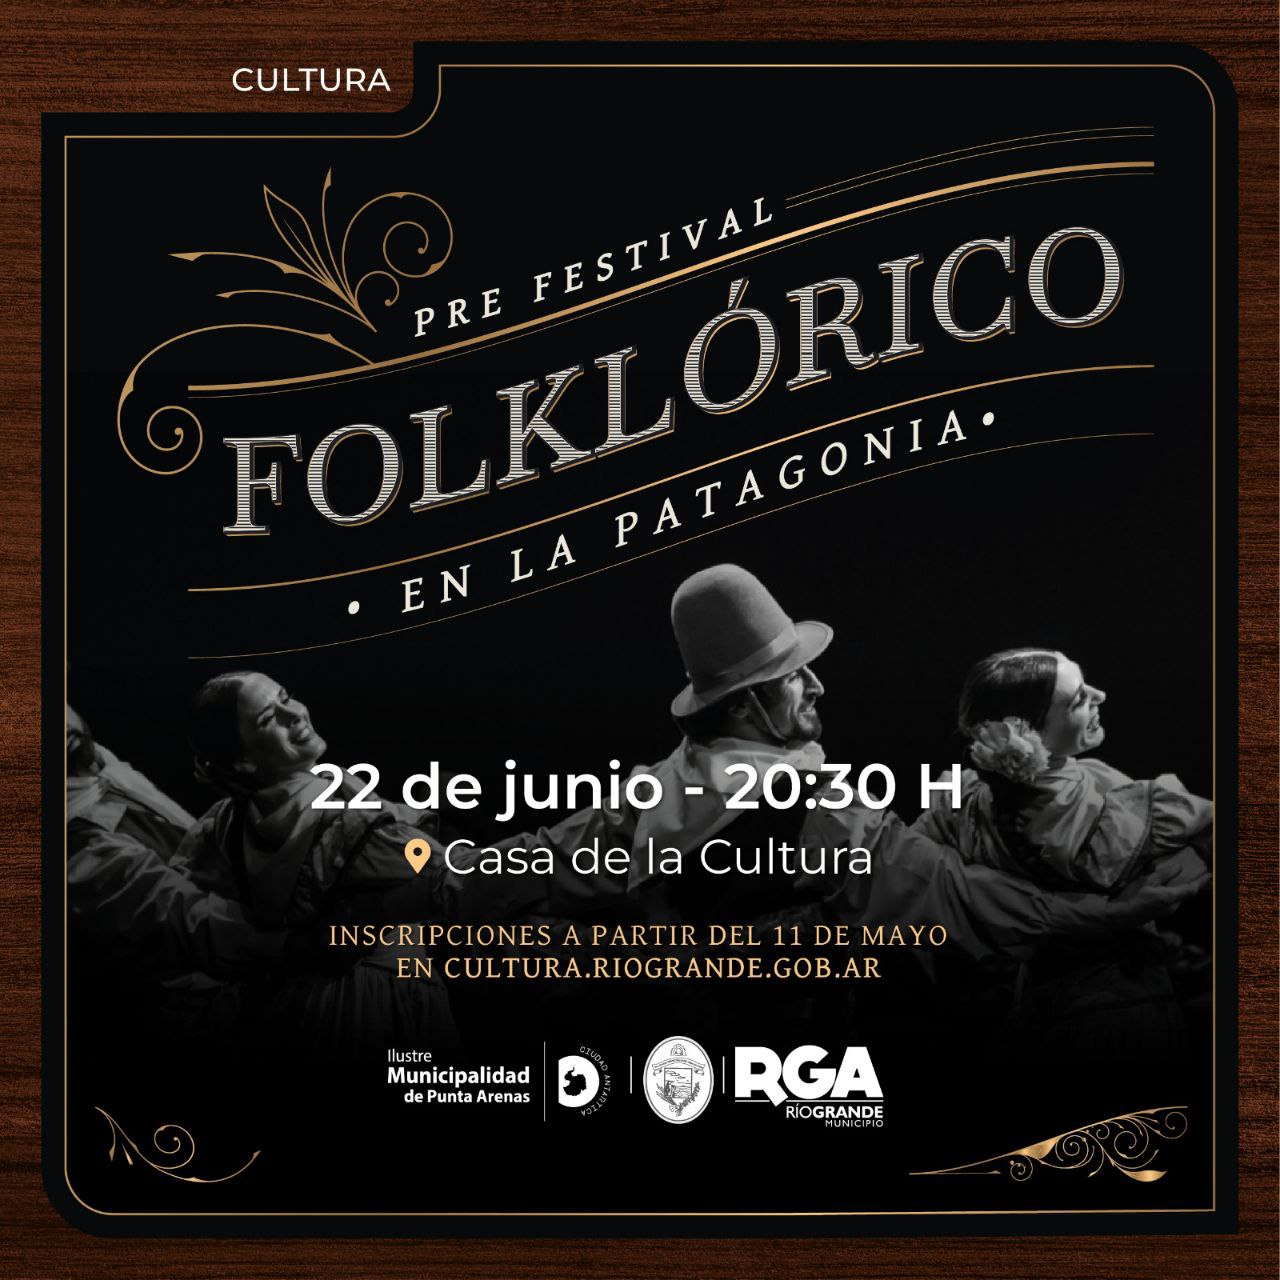 Comenzaron las inscripciones para el Pre Festival Folklórico en la Patagonia